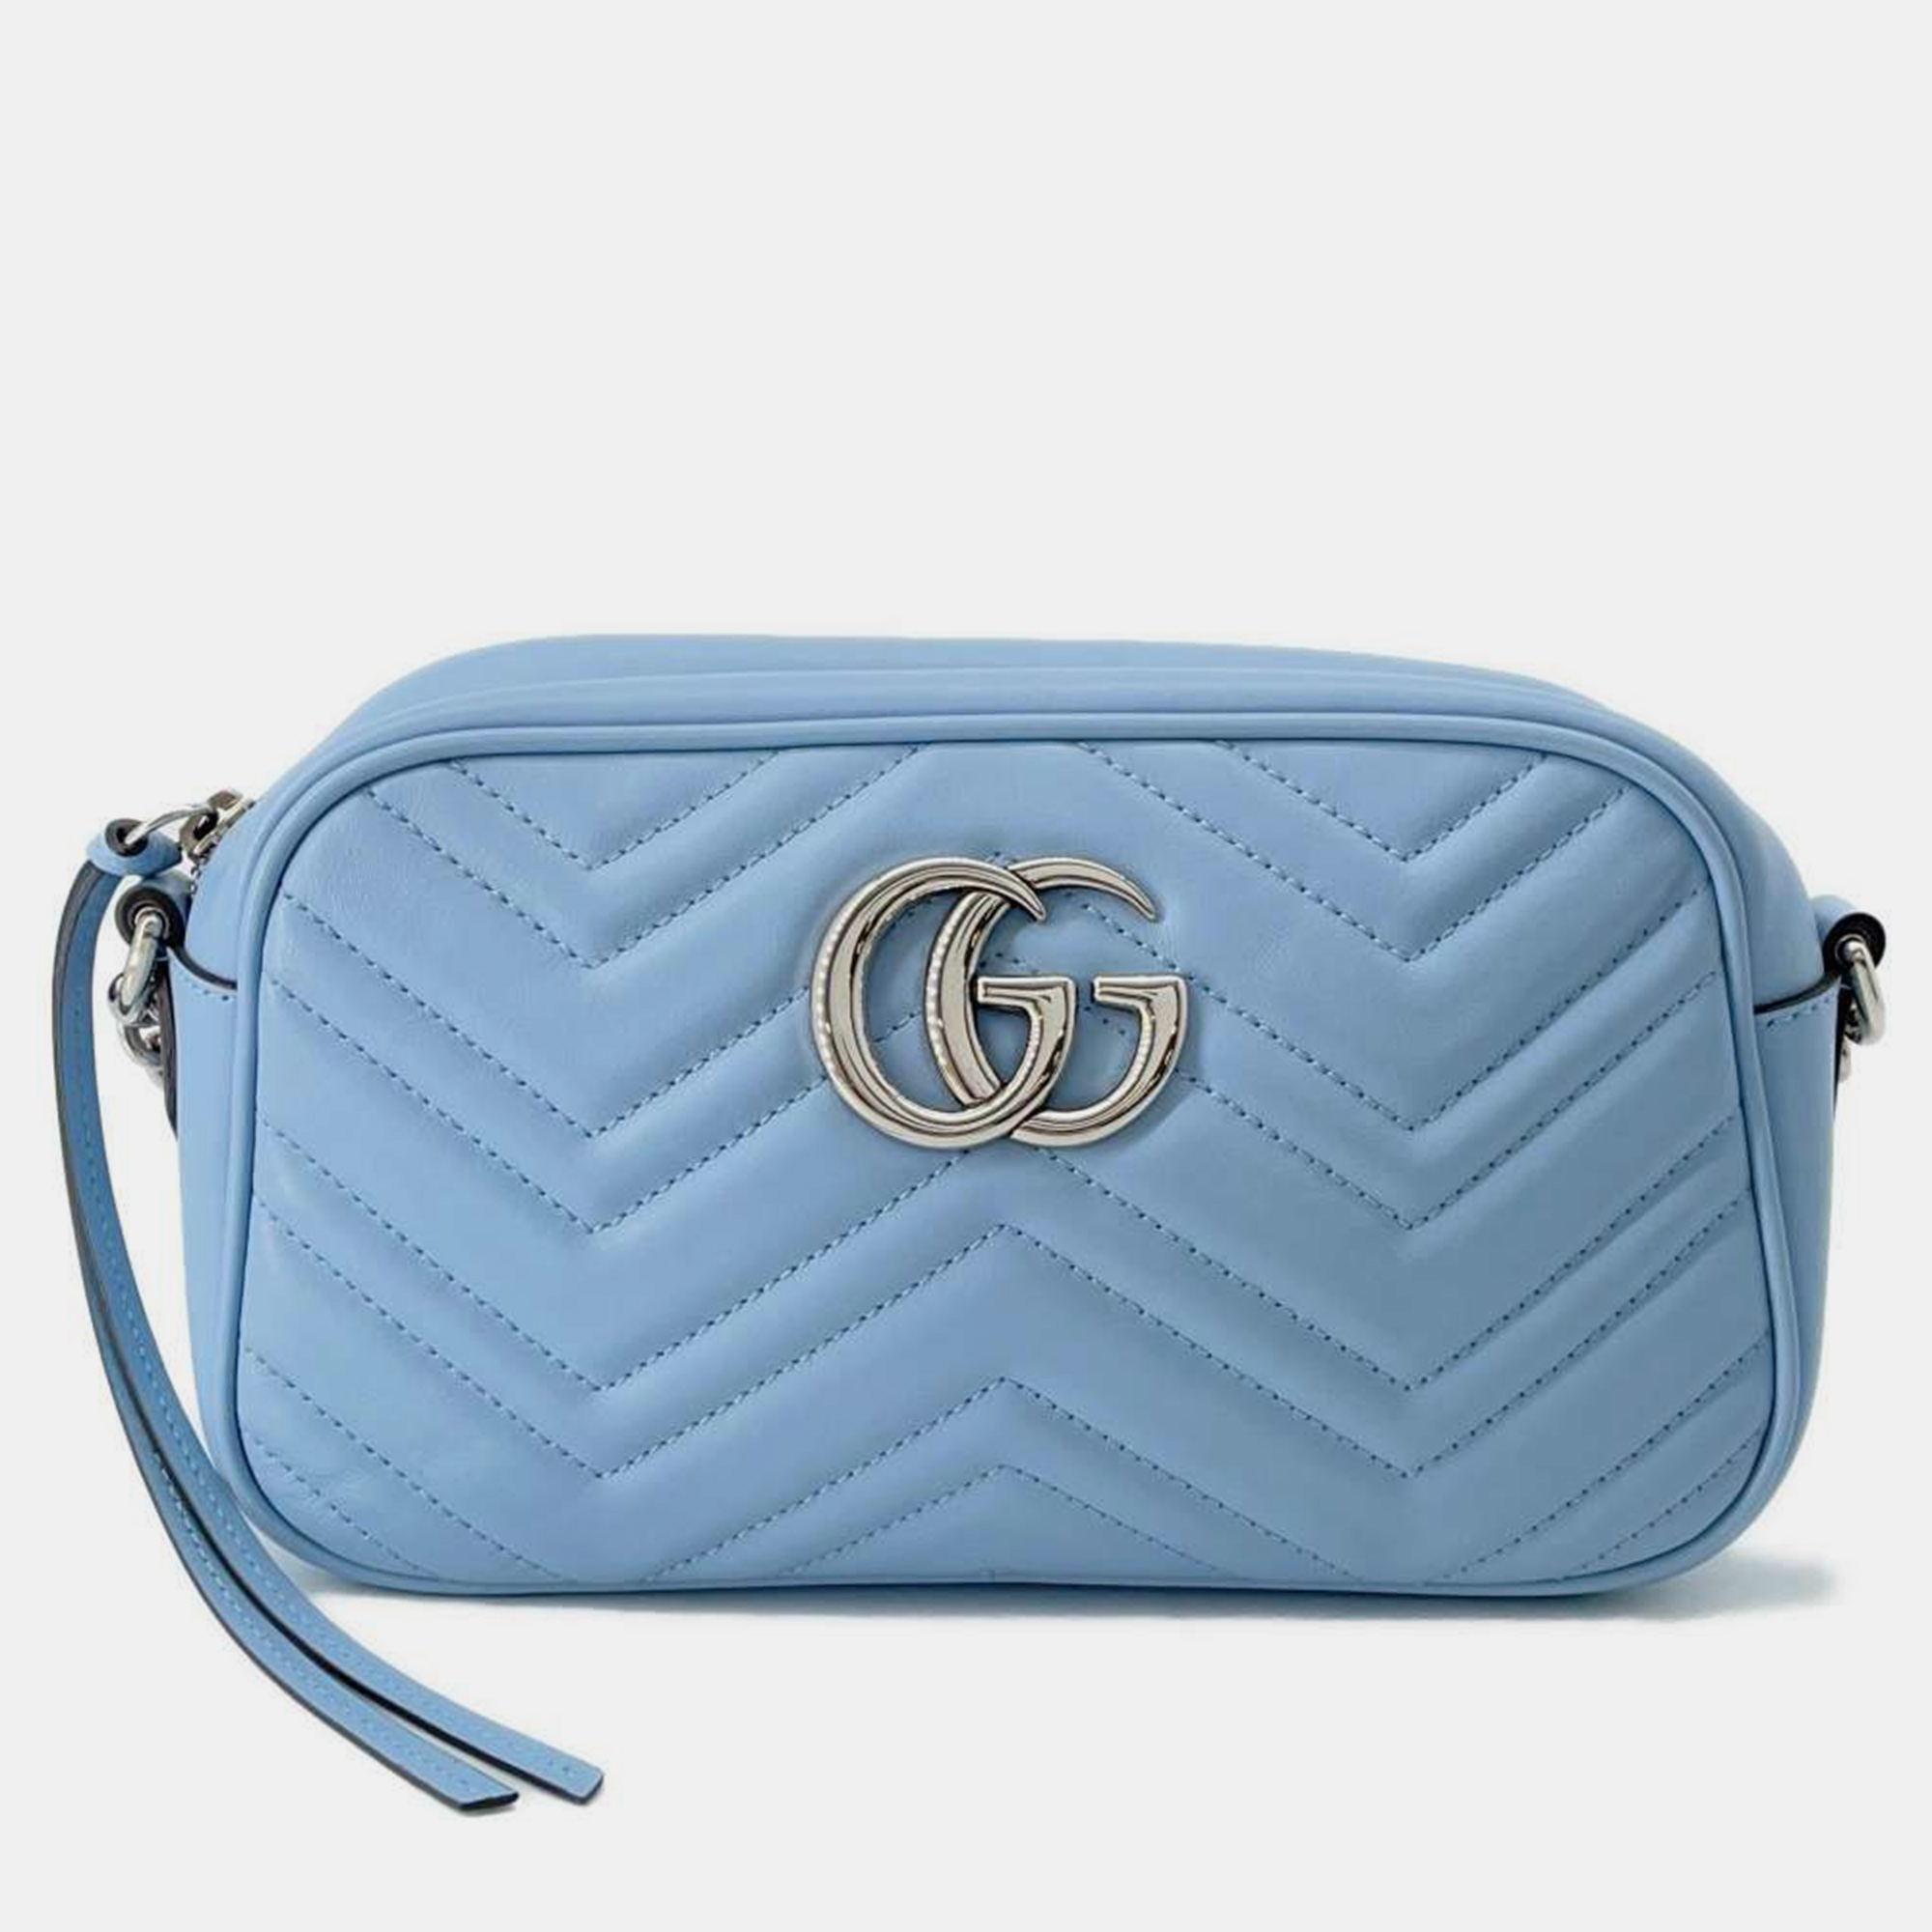 Gucci light blue leather gg marmont shoulder bag